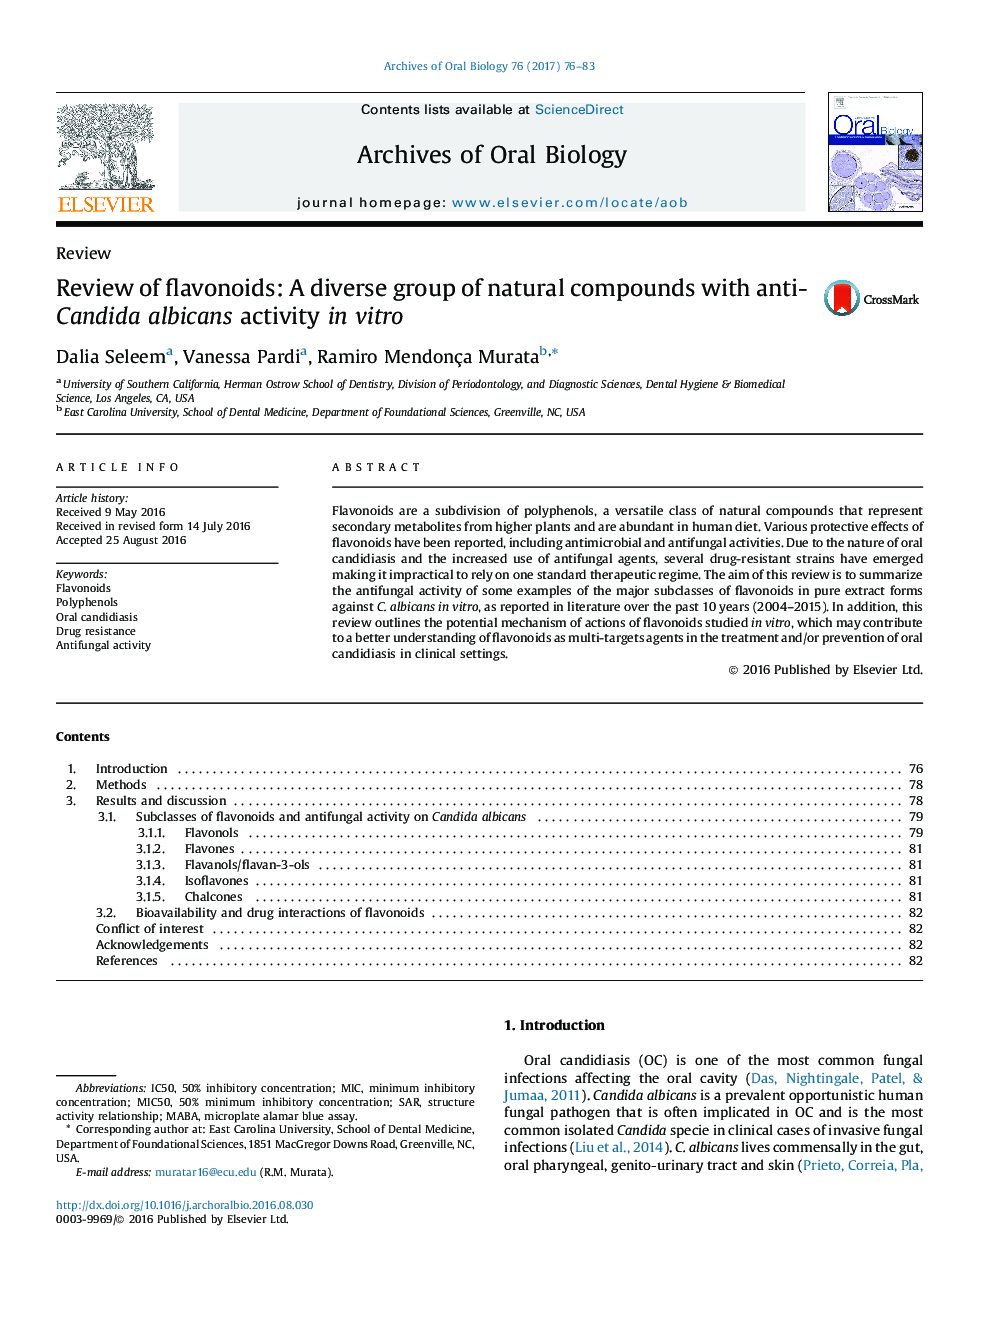 بررسی فلاونوئیدها: یک گروه متنوع ترکیبات طبیعی با فعالیت ضد کاندیدا آلبیکنس در شرایط آزمایشگاهی 